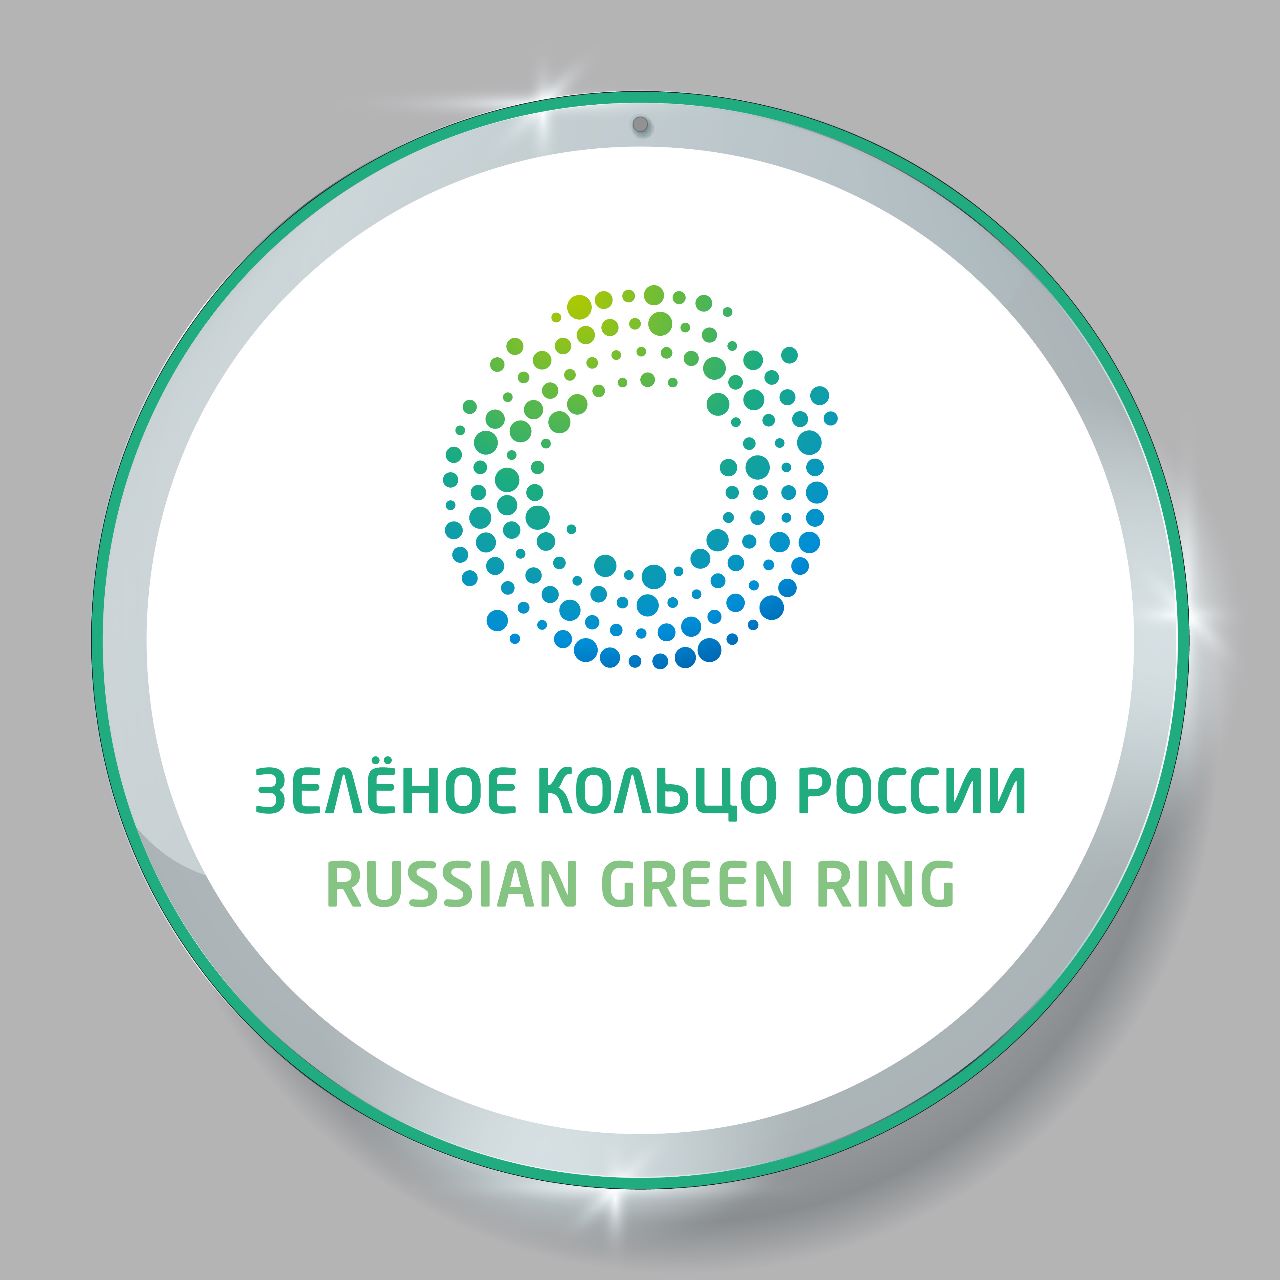 На гранд-финале конкурса «Экософия» был представлен проект «Зеленое кольцо России»